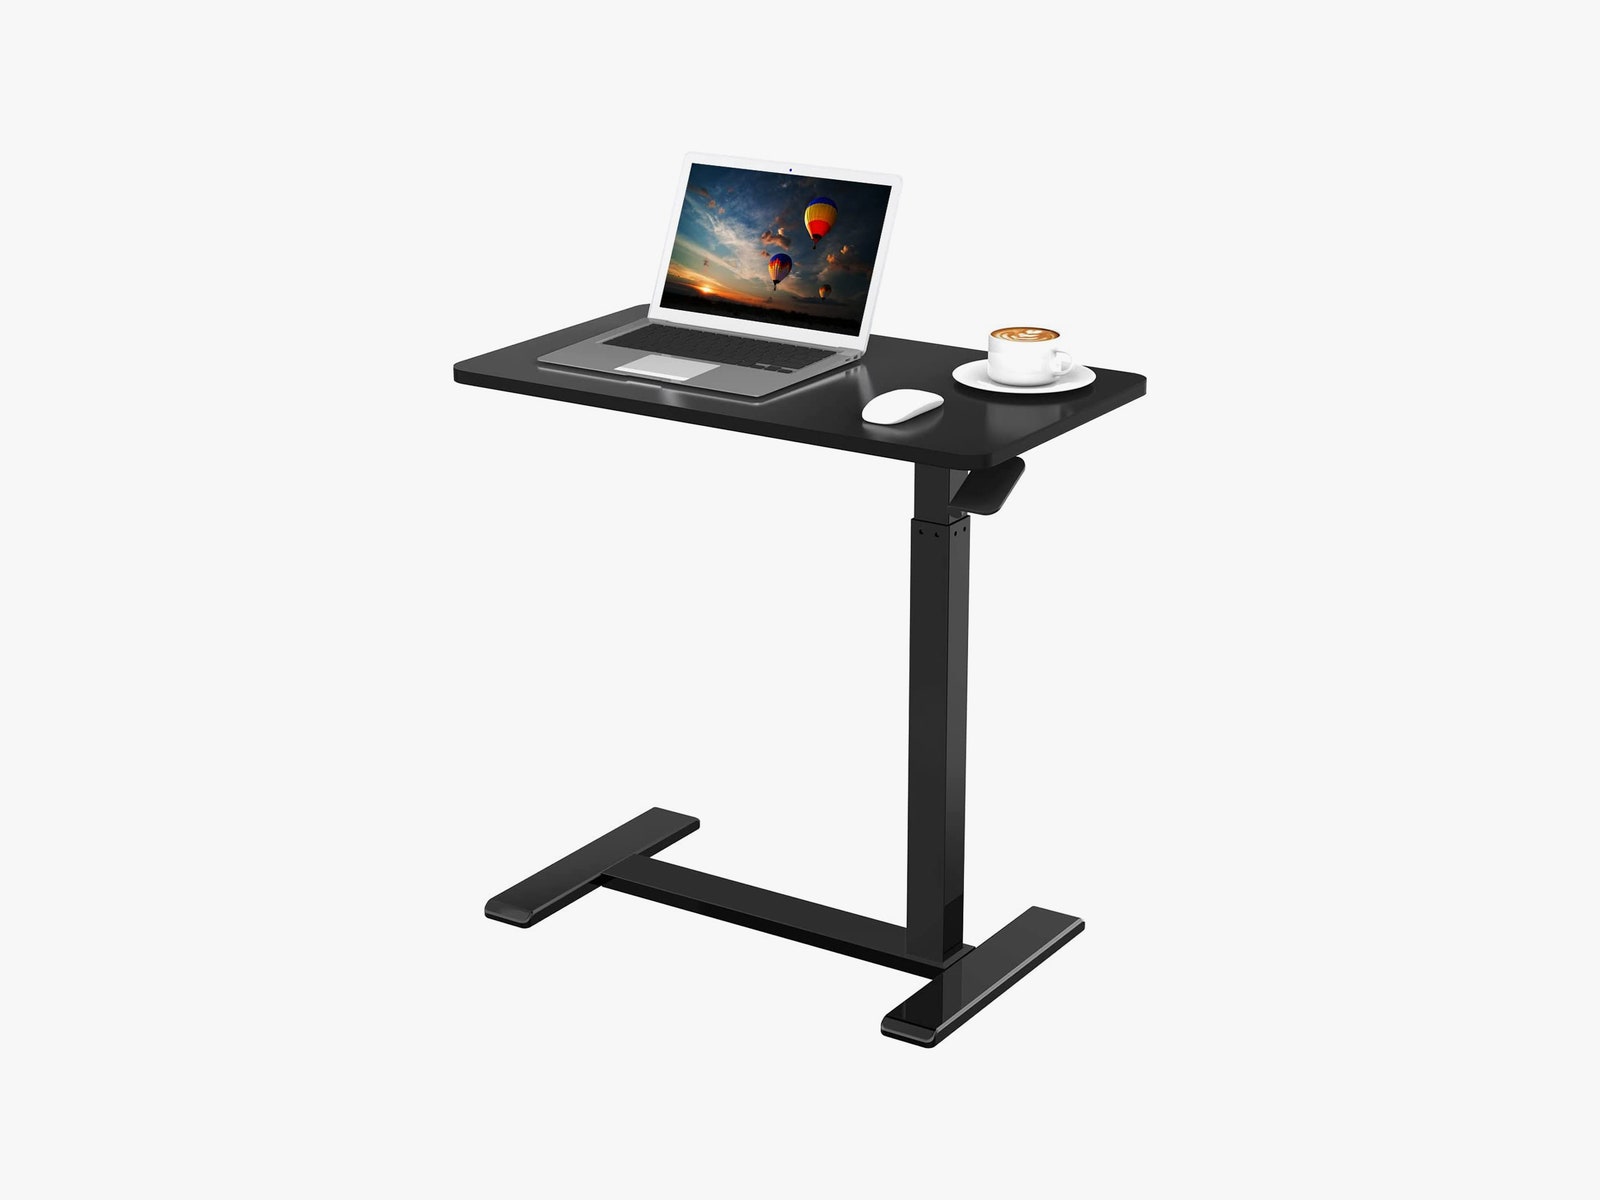 Table réglable Flexispot avec souris d'ordinateur portable et tasse de café sur le dessus.